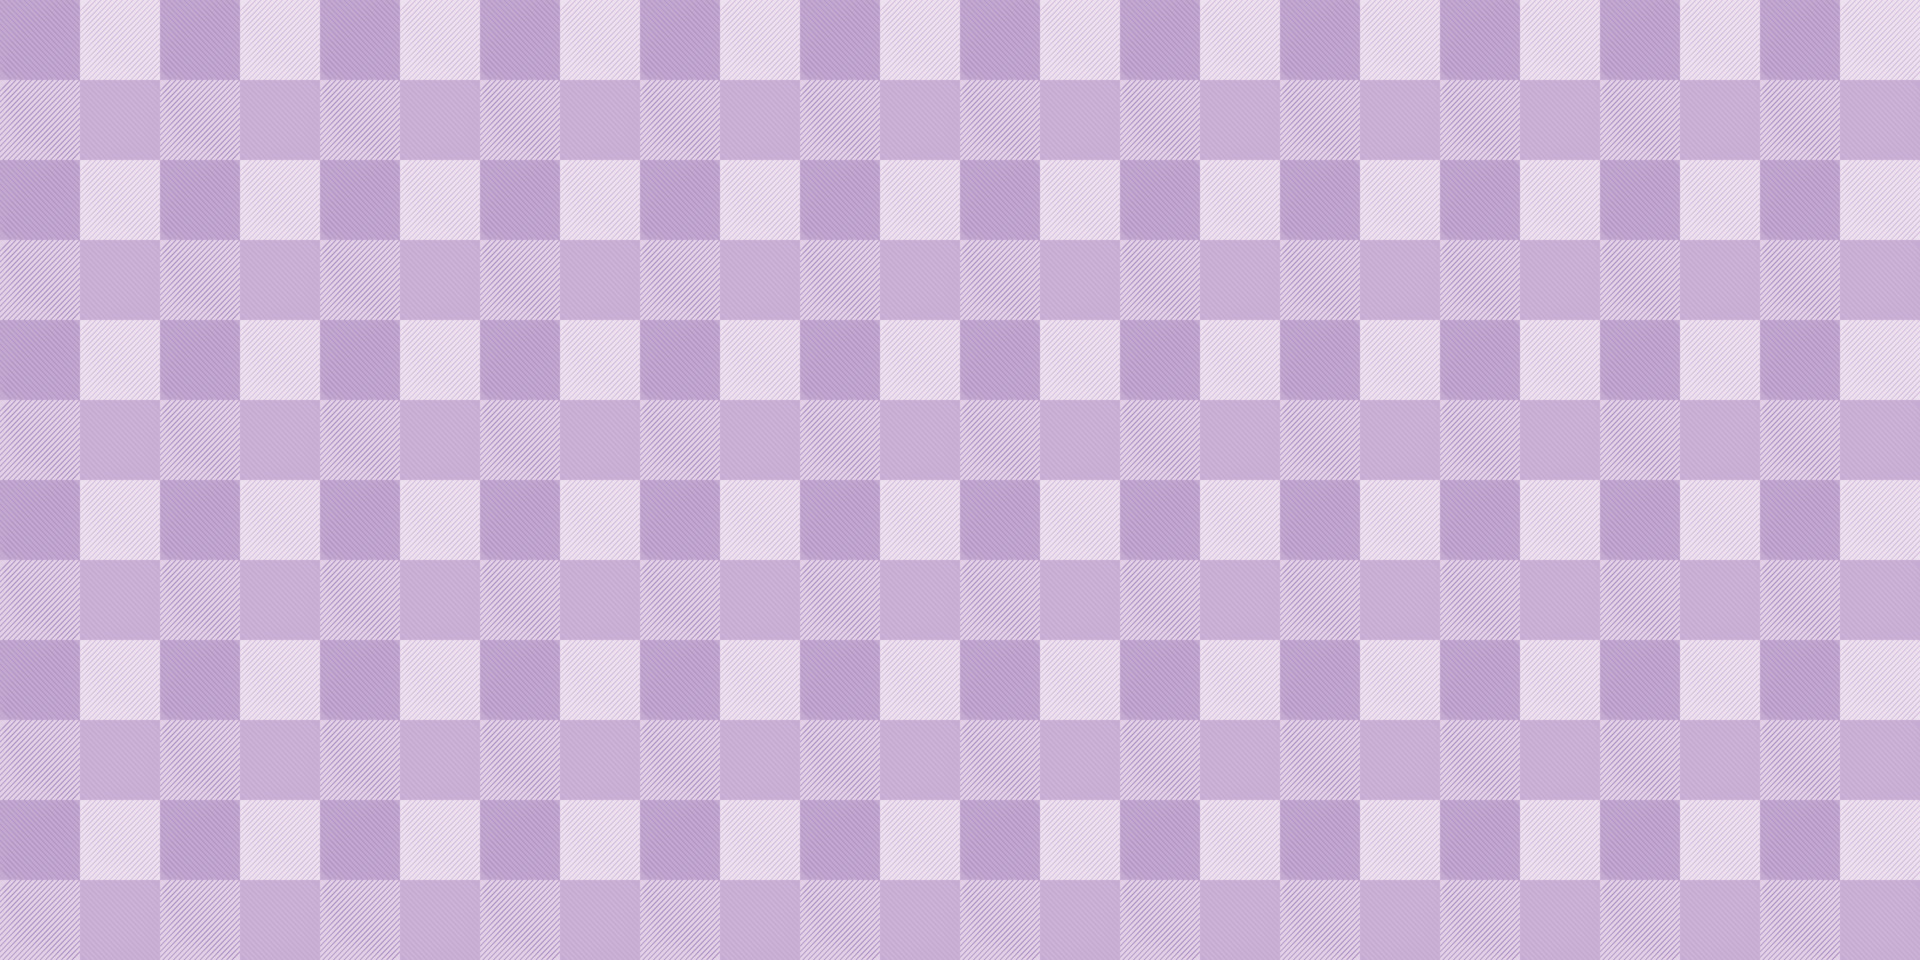 xadrez tecido têxtil pano toalha de mesa tartan azul cor abstrato textura  papel de parede padrão sem costura ilustração vetorial 08192021 6749762  Vetor no Vecteezy